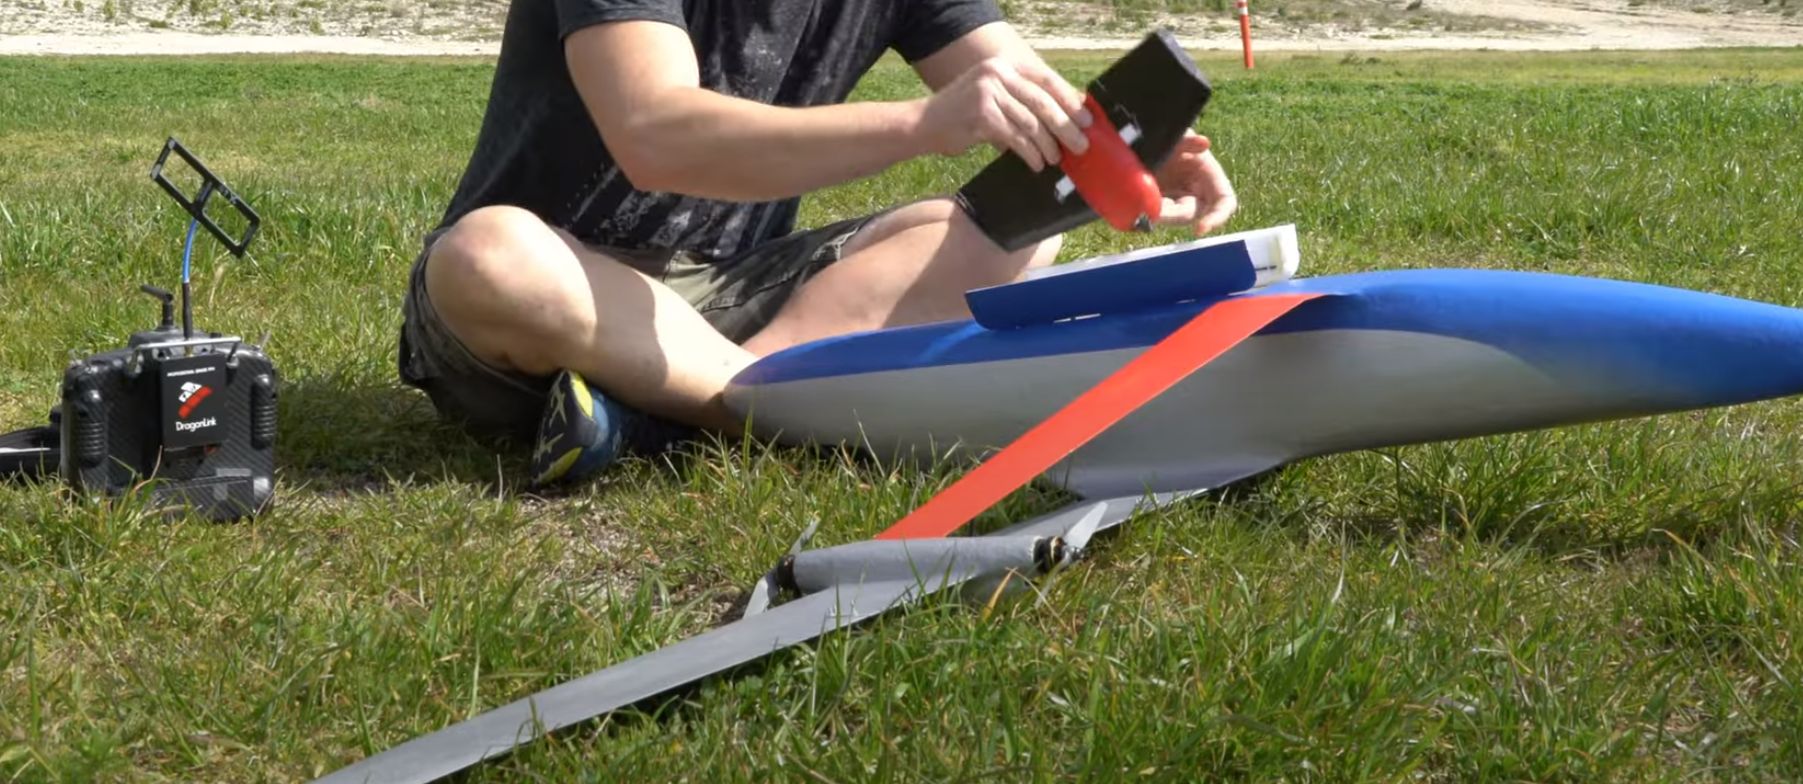 Vites kolu ile model bir uçak inşa etmek: mantıklı mı yoksa saçma mı?